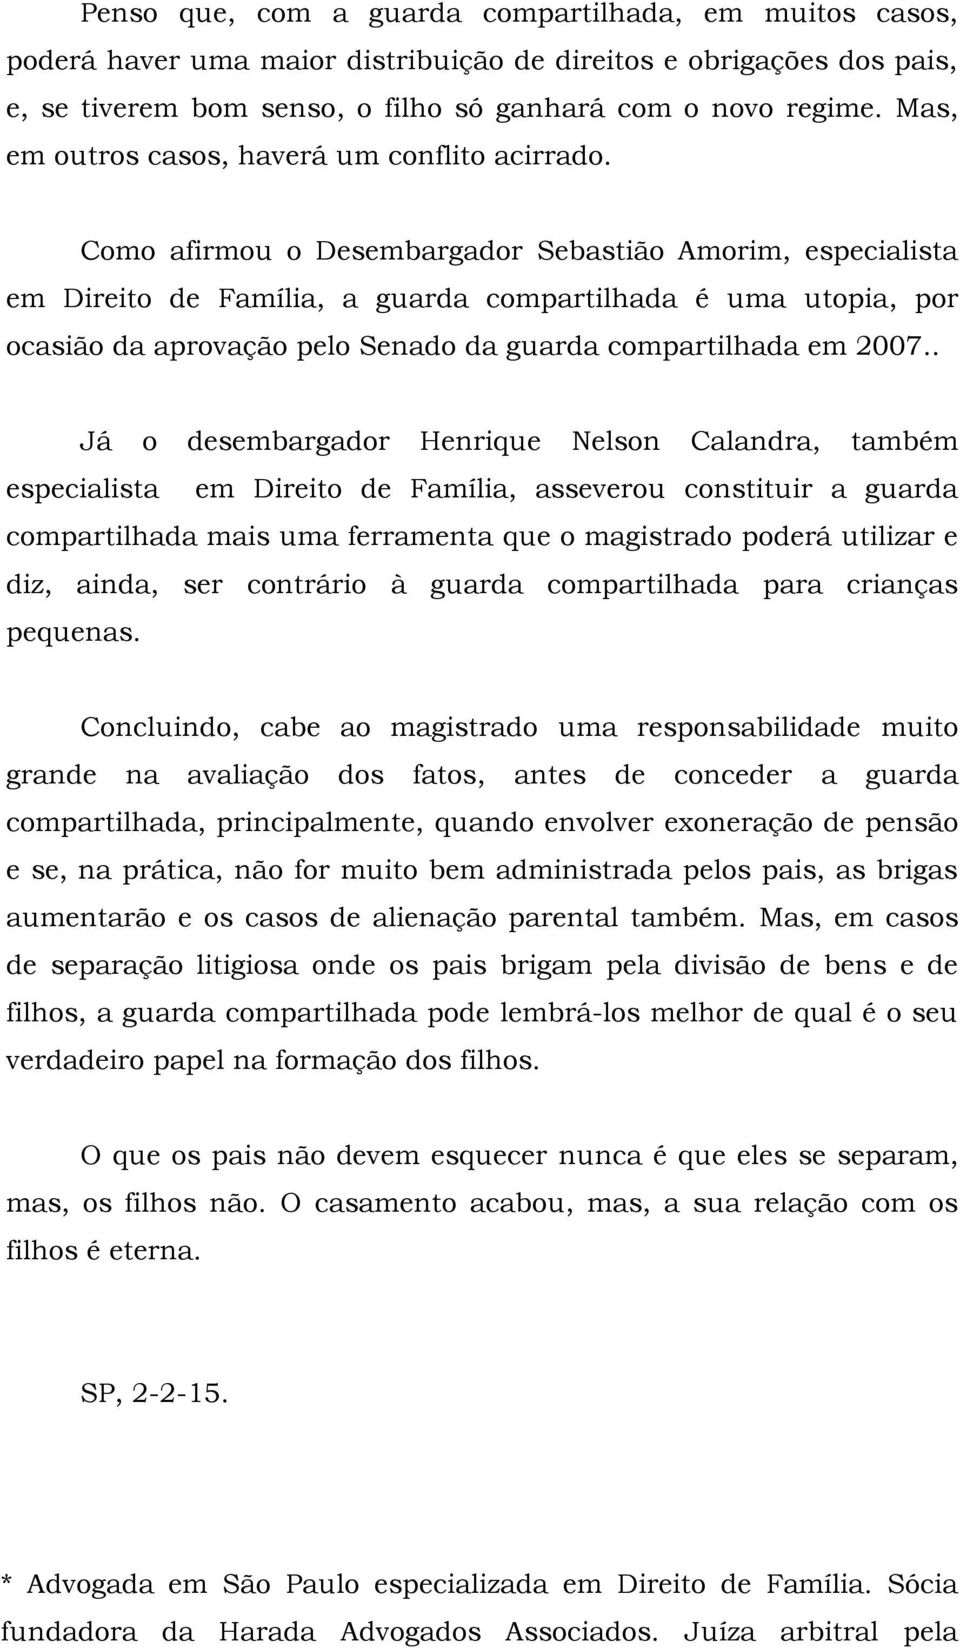 Como afirmou o Desembargador Sebastião Amorim, especialista em Direito de Família, a guarda compartilhada é uma utopia, por ocasião da aprovação pelo Senado da guarda compartilhada em 2007.